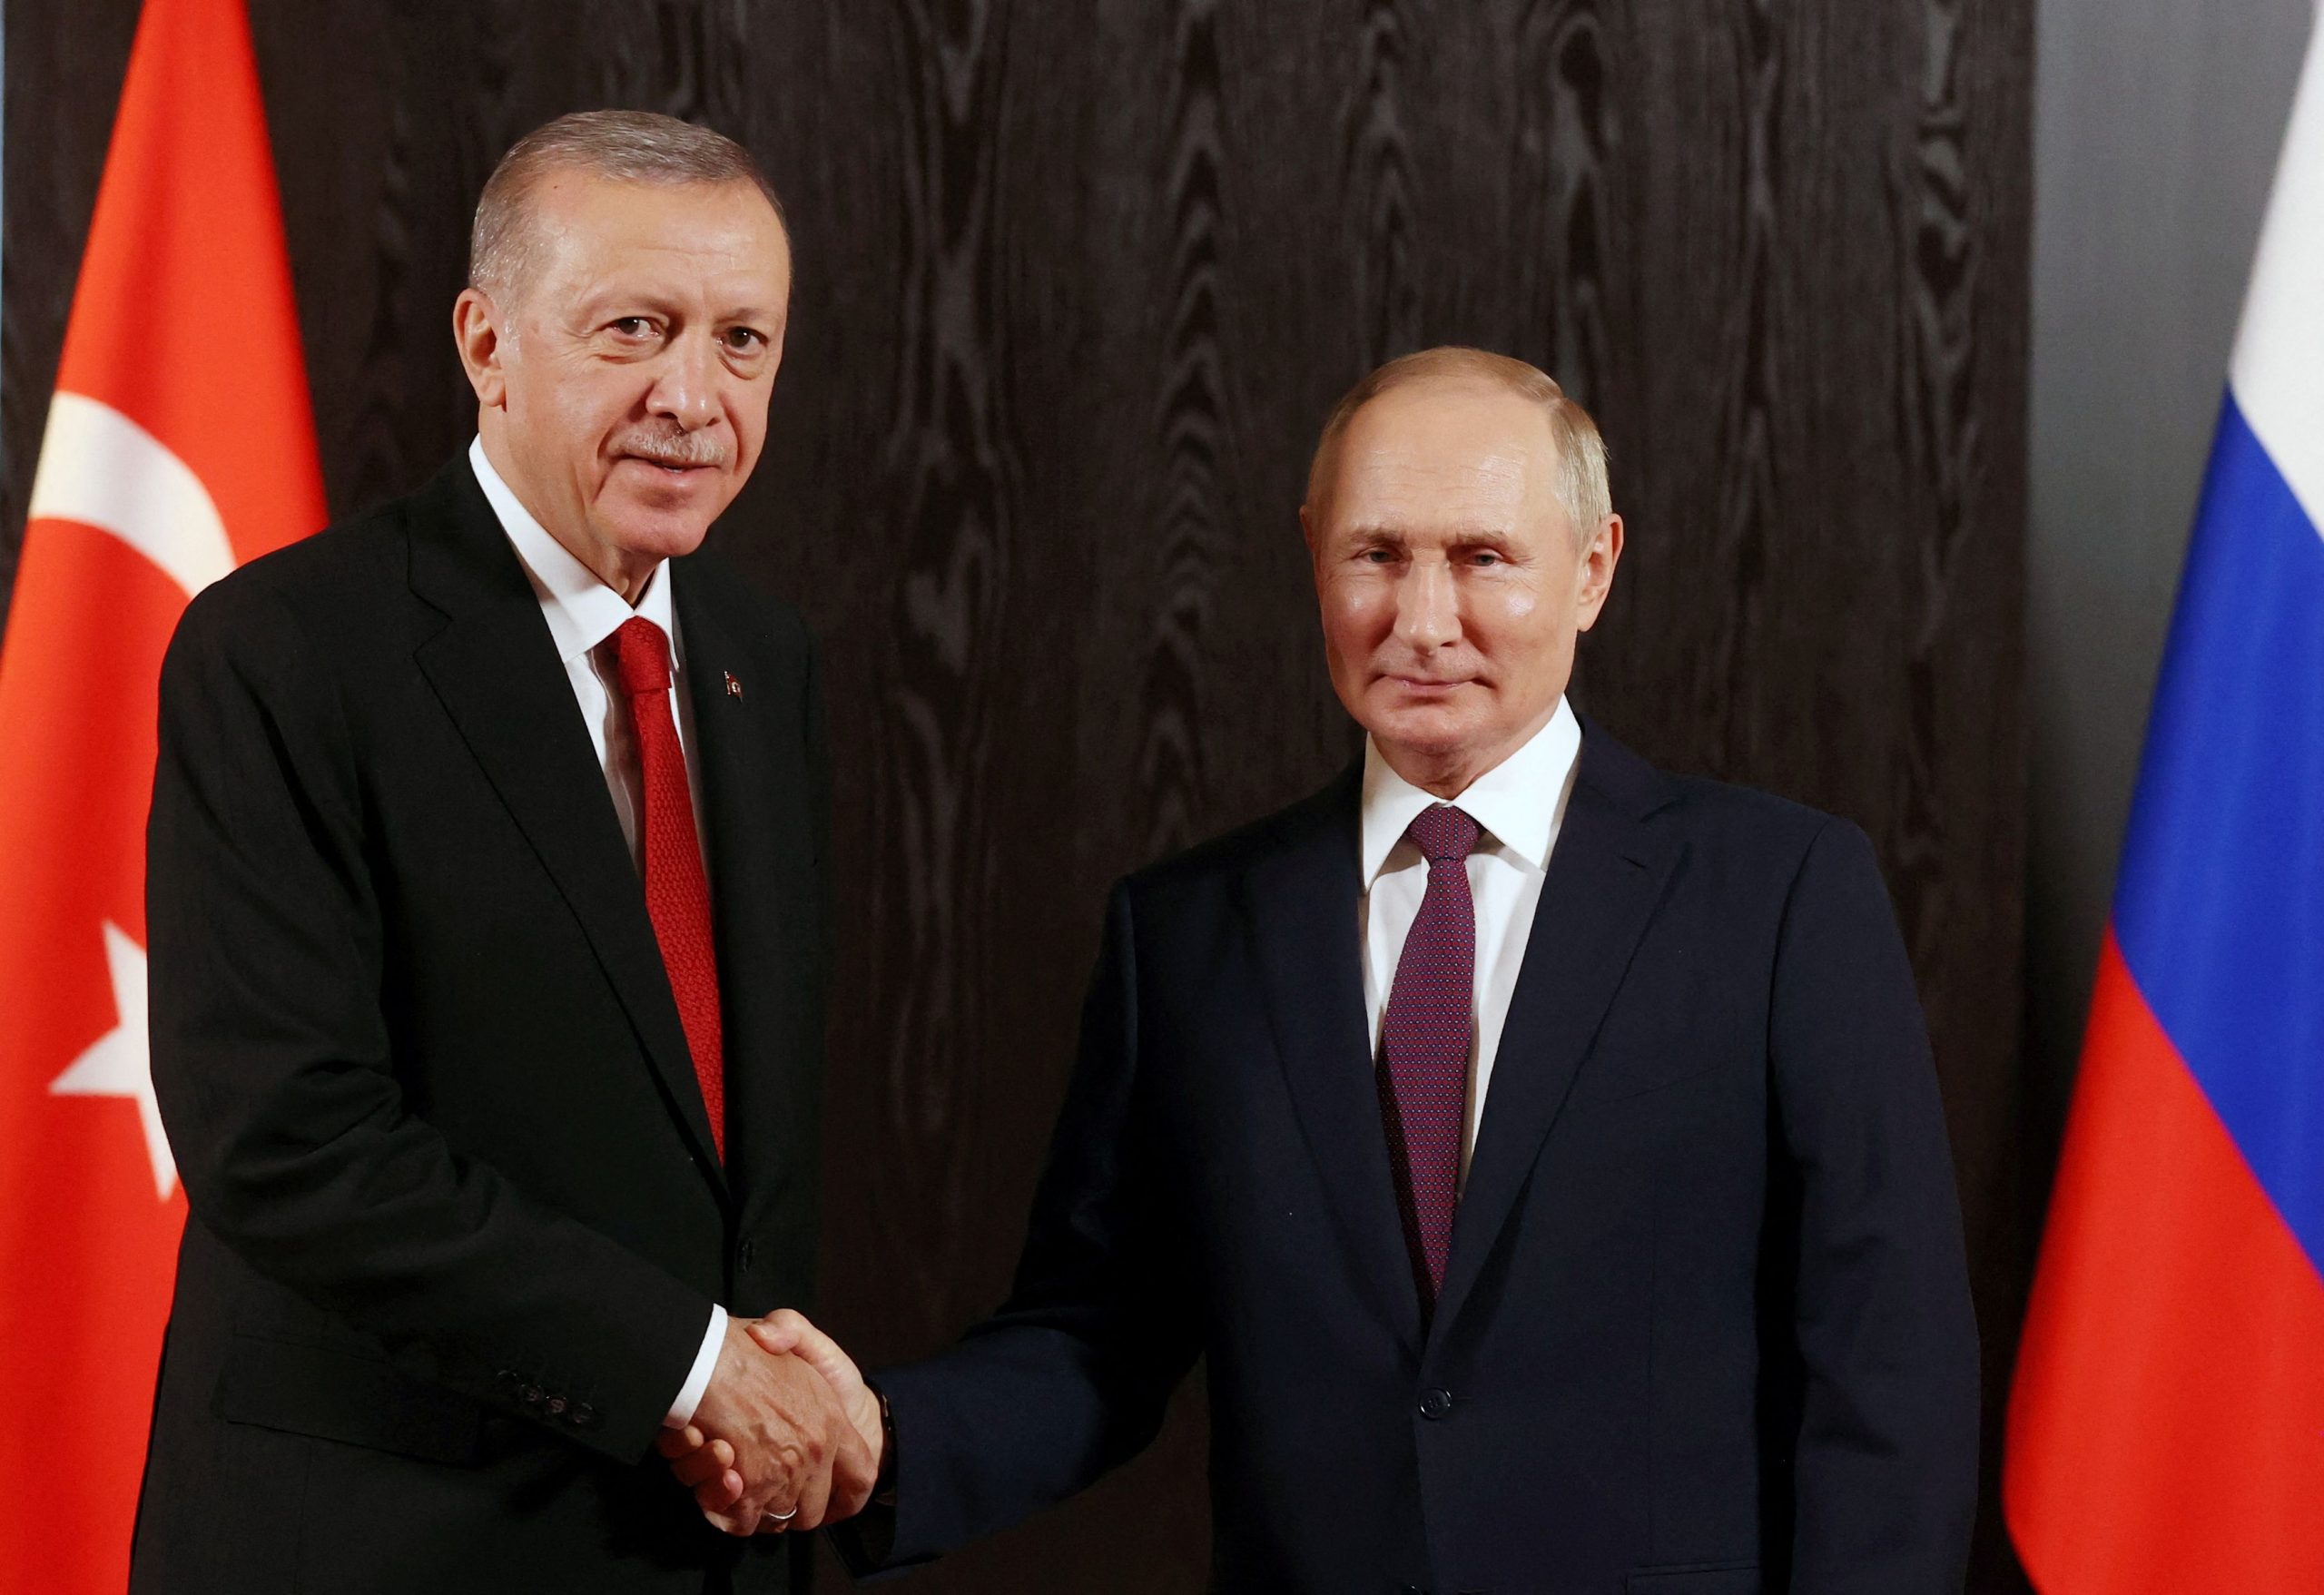 Η άσκηση ισορροπίας του Ερντογάν ανάμεσα στον Πούτιν και τη Δύση